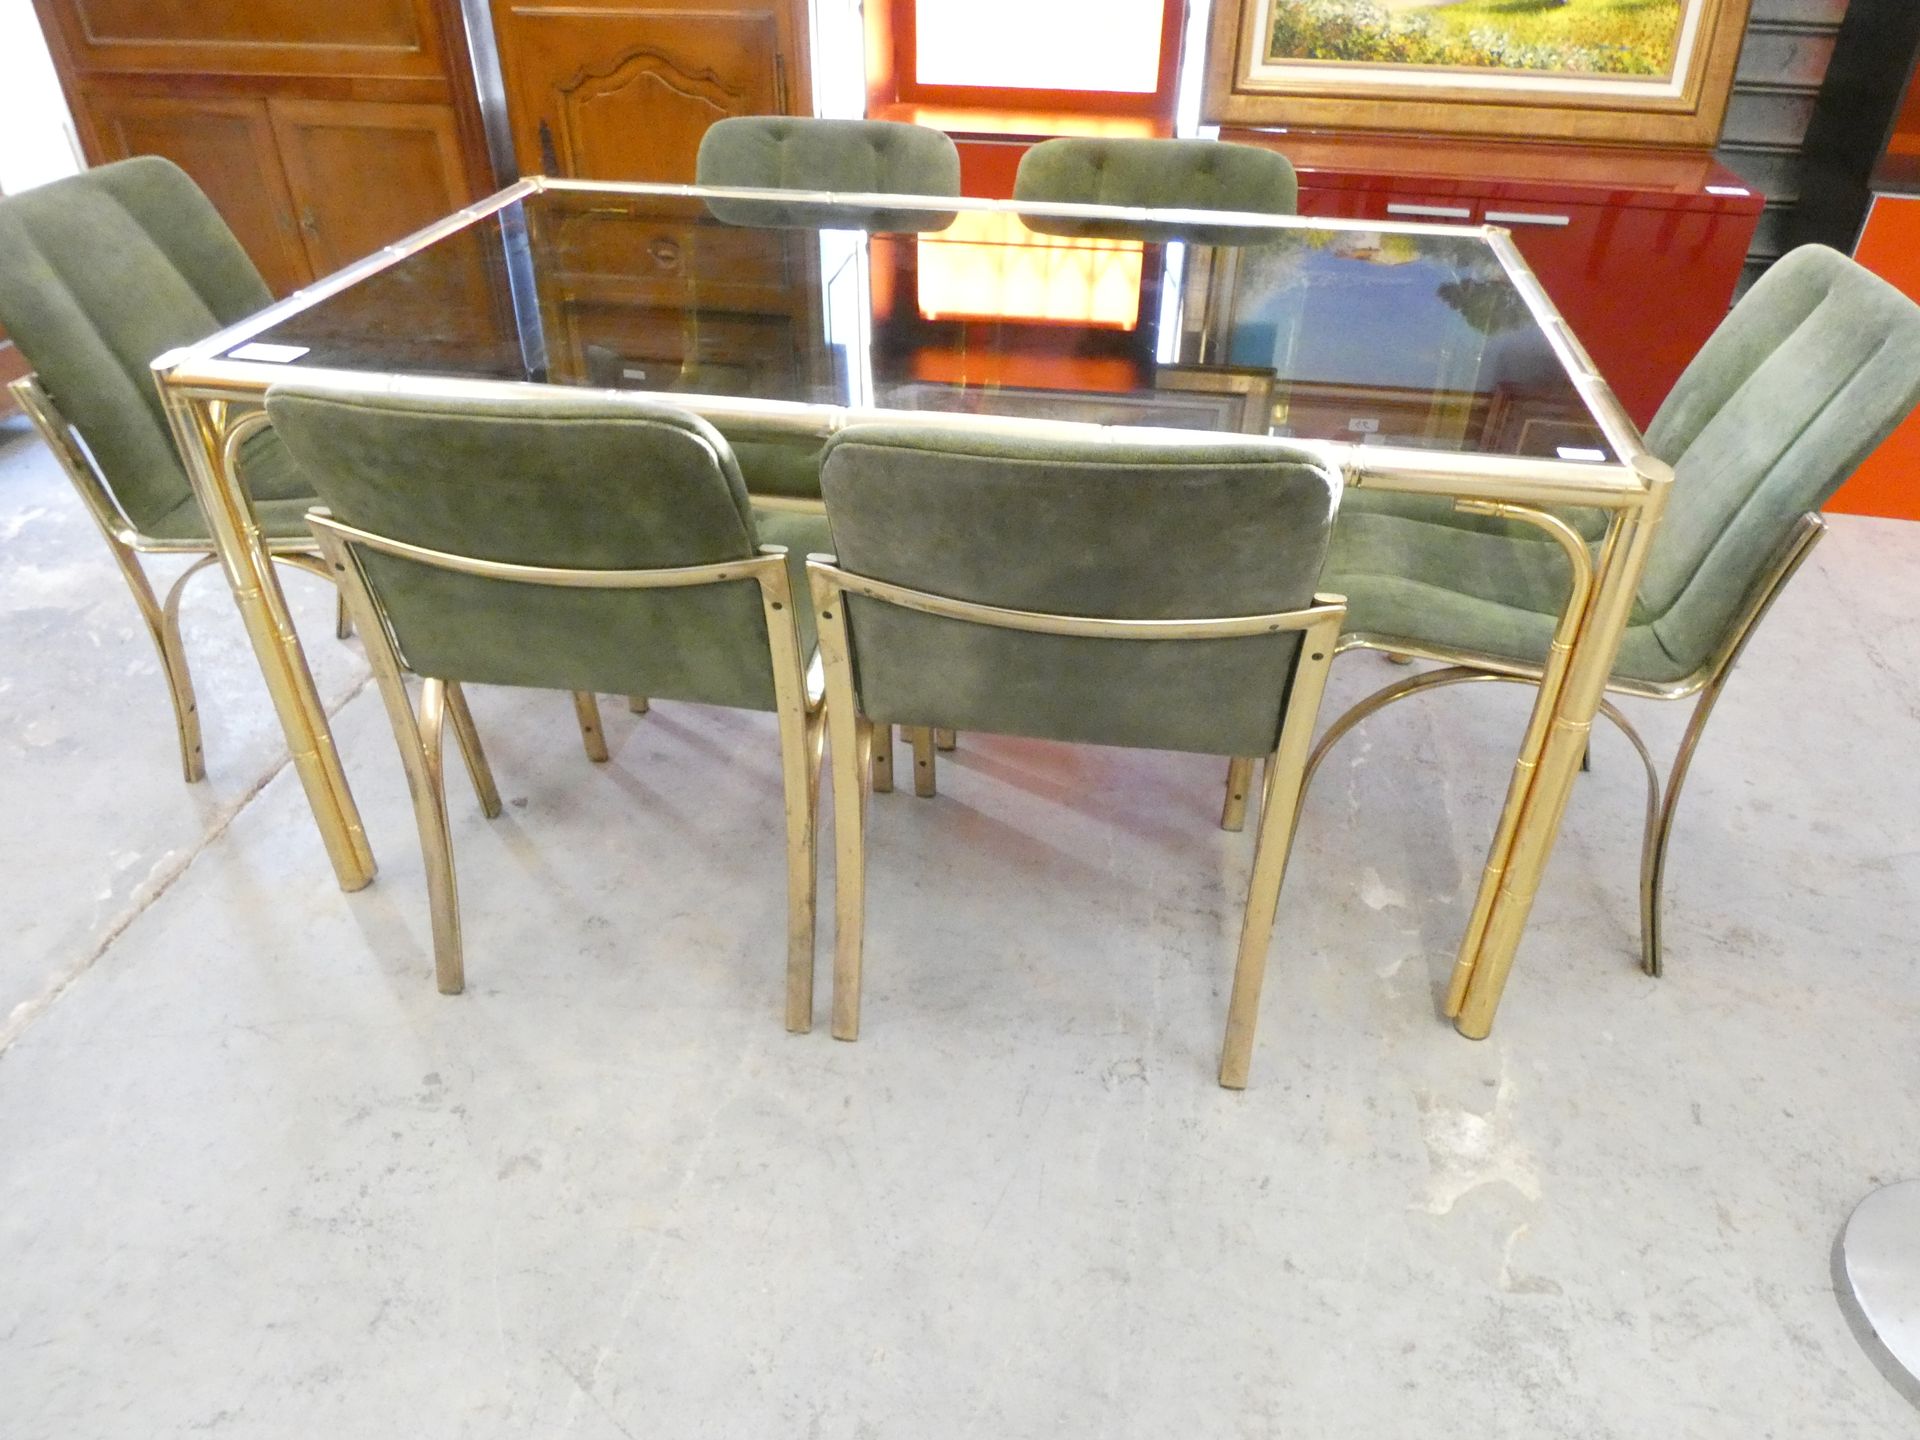 Null 
1张70年代的金色黄铜铲形竹制烟熏玻璃桌，147/88/71厘米+6把各式各样的绿色椅子，意大利设计的状态